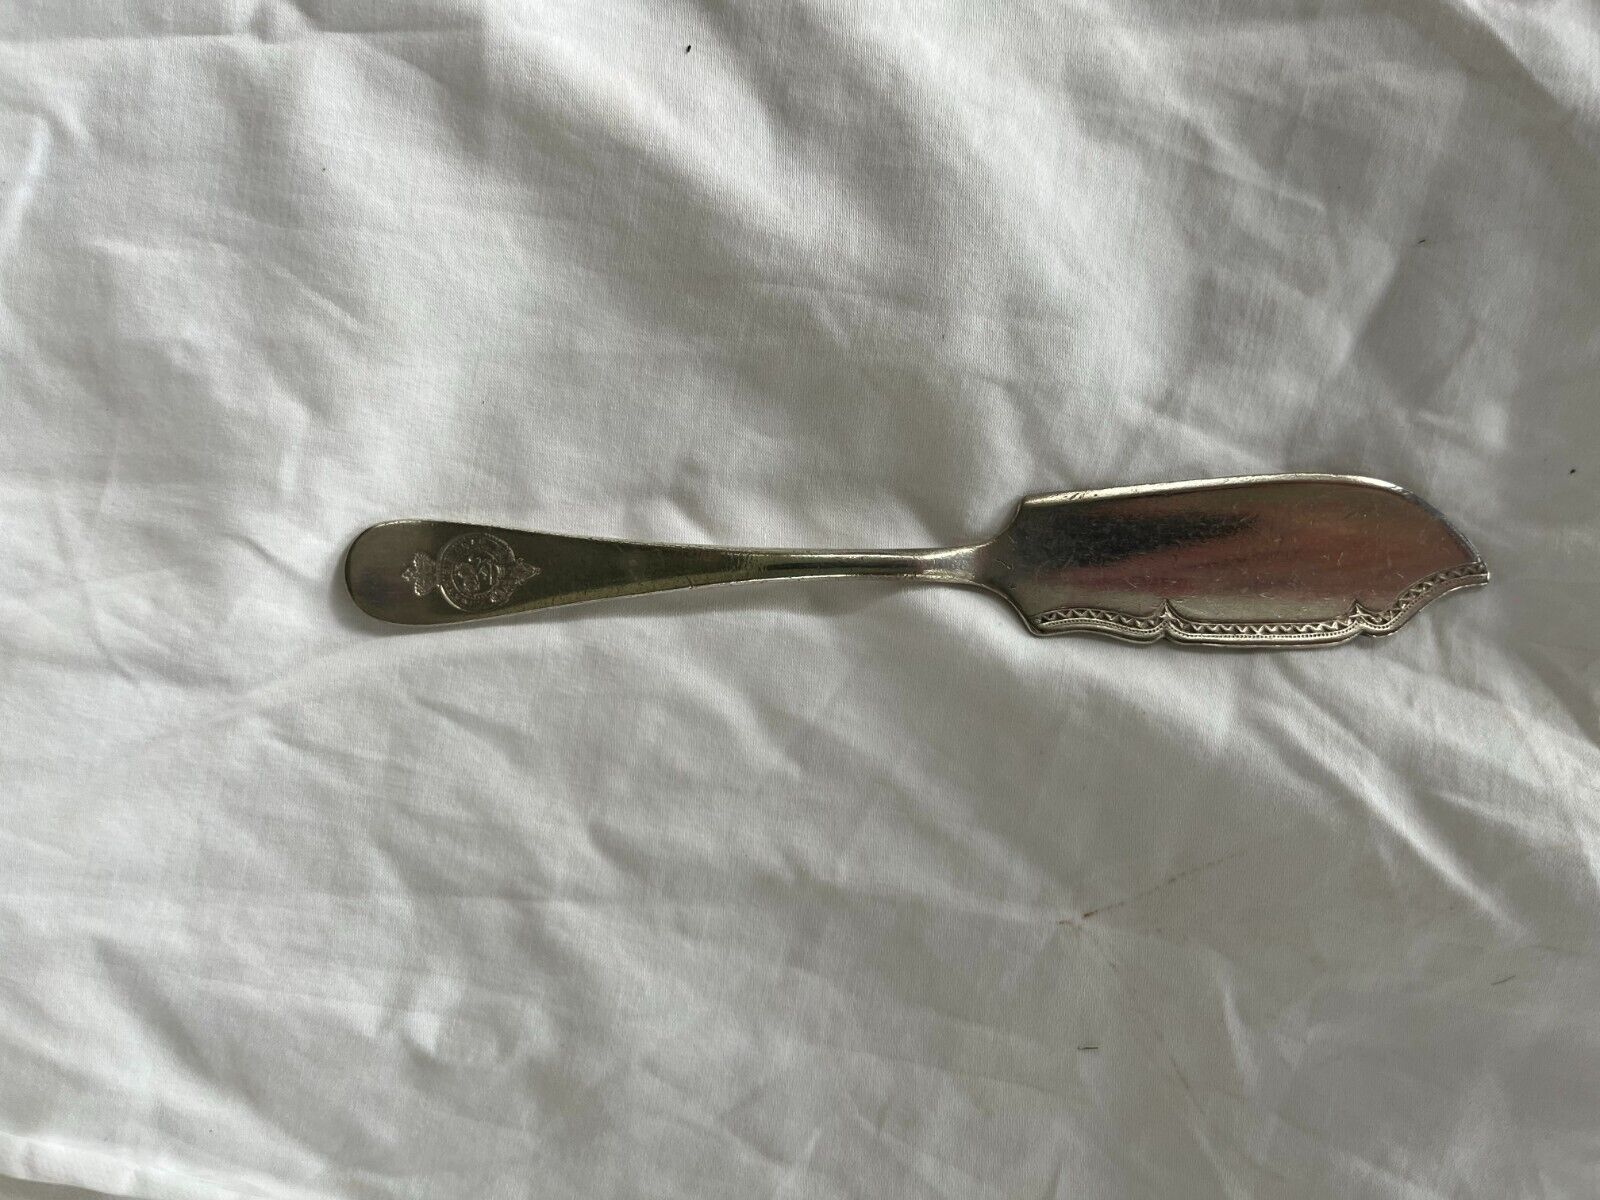 CUNARD 1ST CLASS FISH KNIFE - ELKINGTON PLATE - 1912